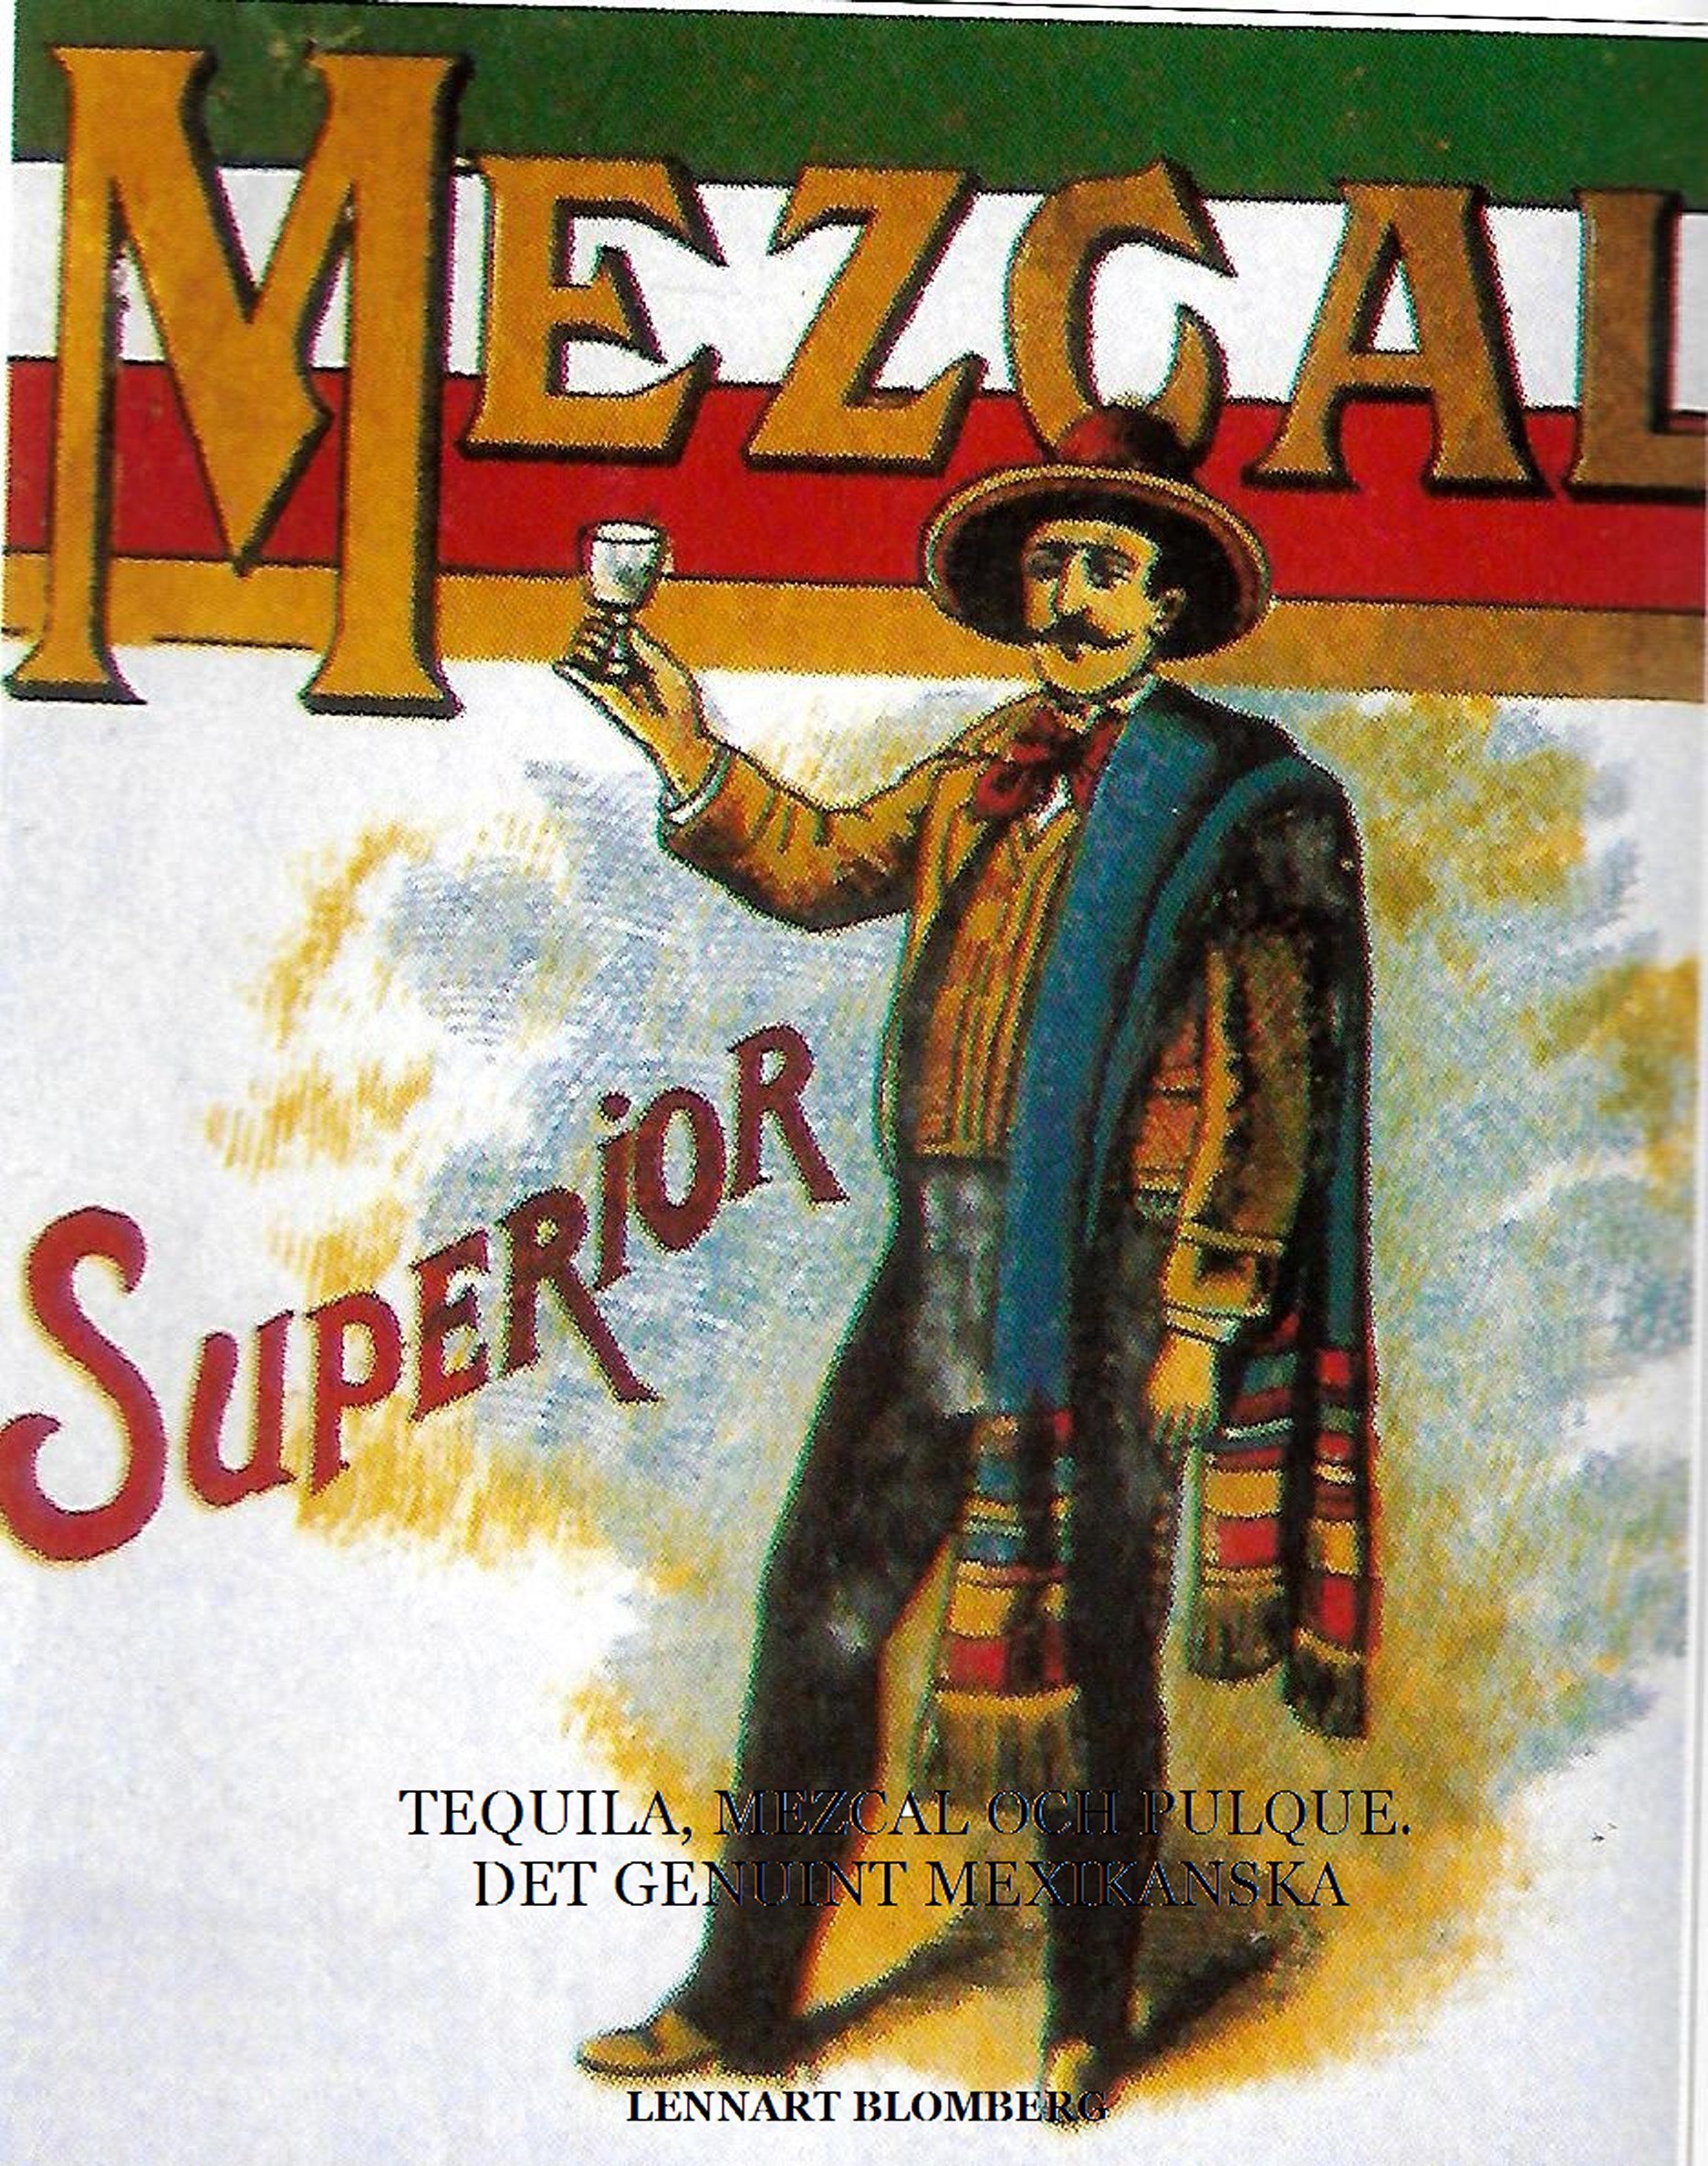 Tequila, Mezcal och Pulque. Det genuint Mexikanska, eBook by Lennart Blomberg